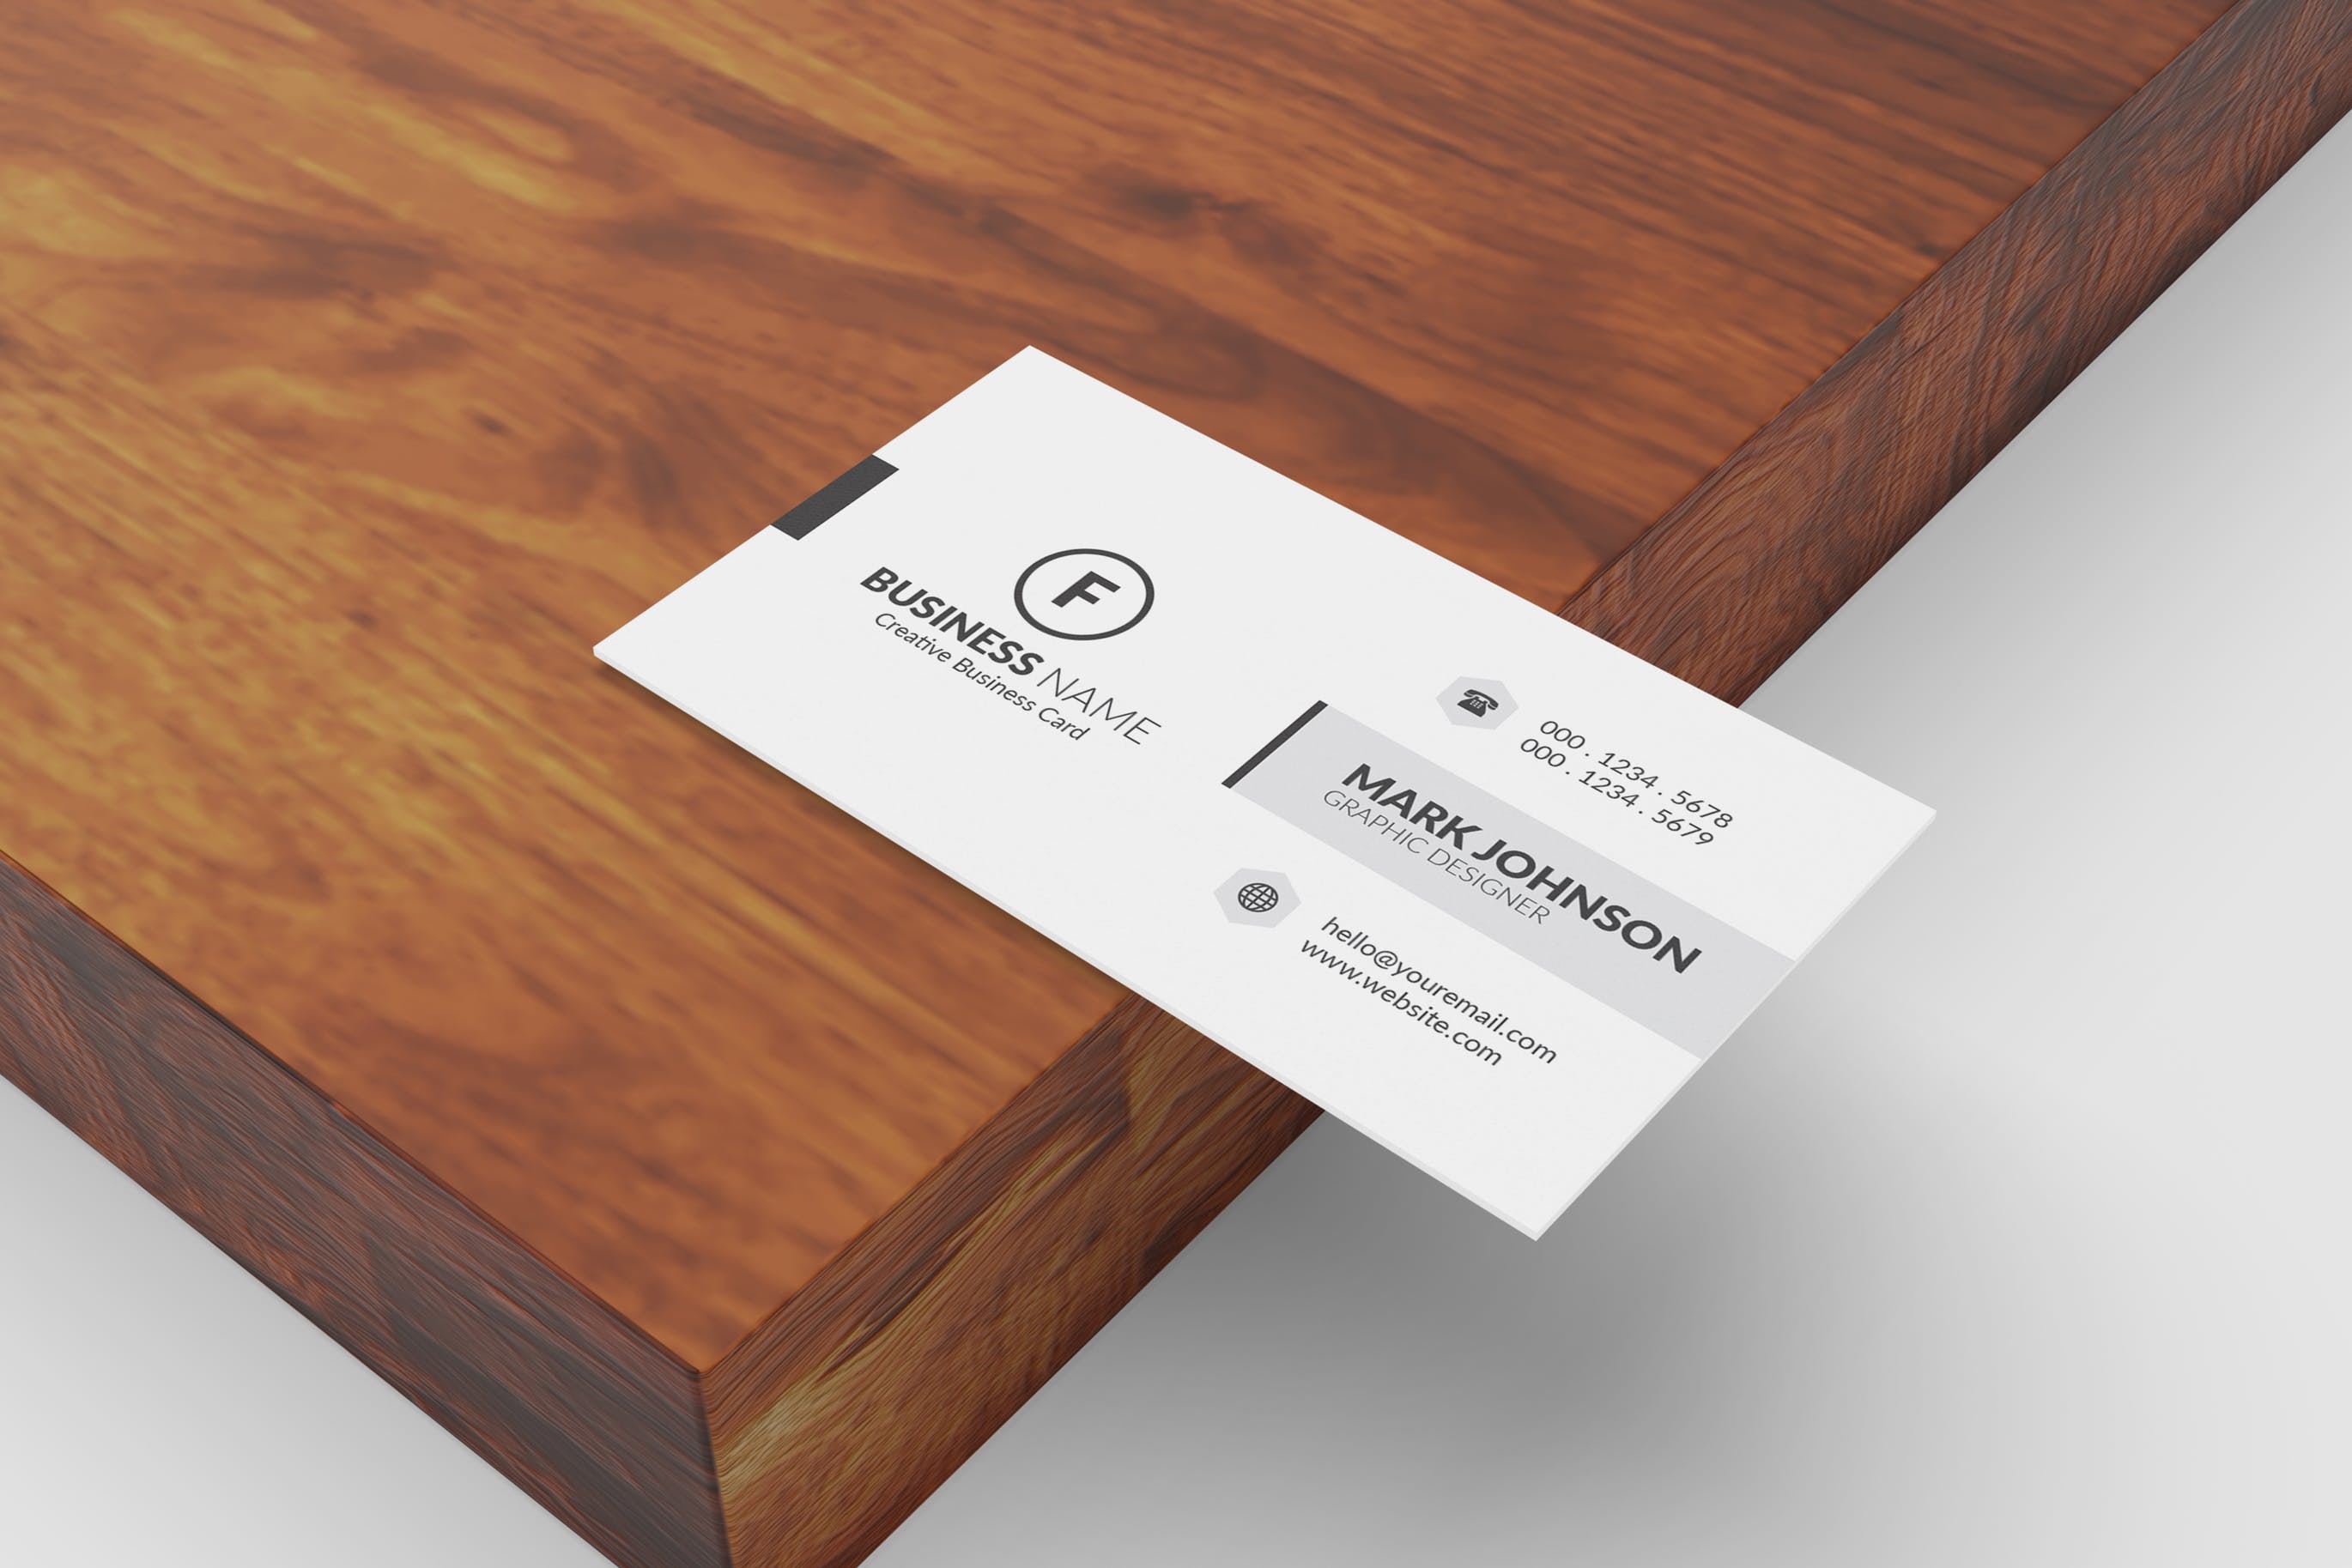 极简设计风格名片设计效果图蚂蚁素材精选 Minimalist Business Cards Mockup插图